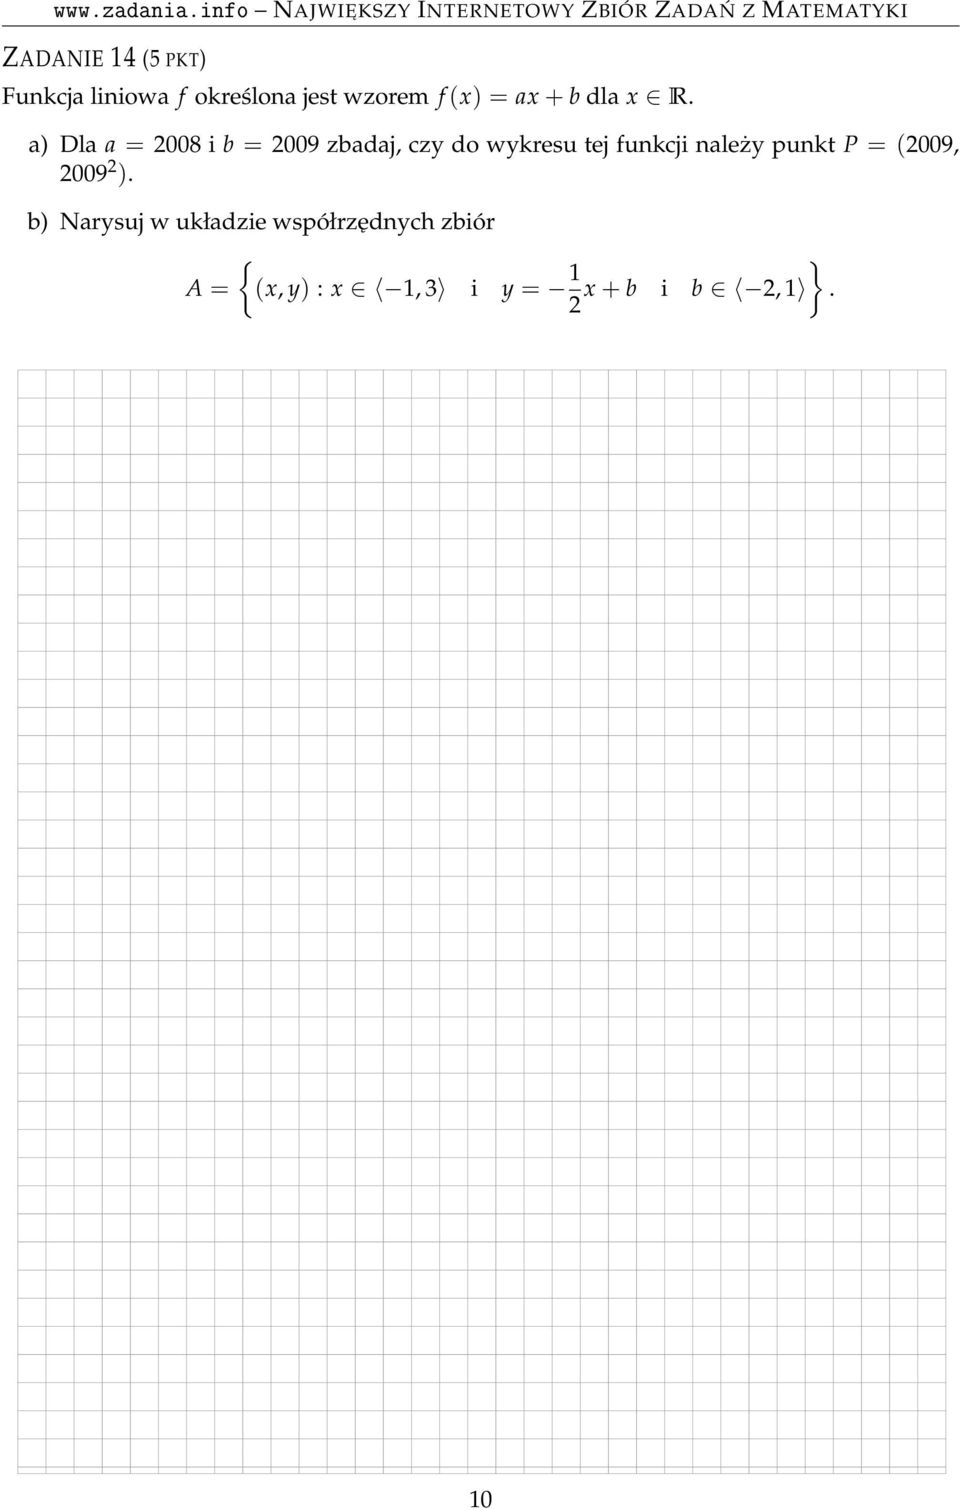 a) Dla a = 2008 i b = 2009 zbadaj, czy do wykresu tej funkcji